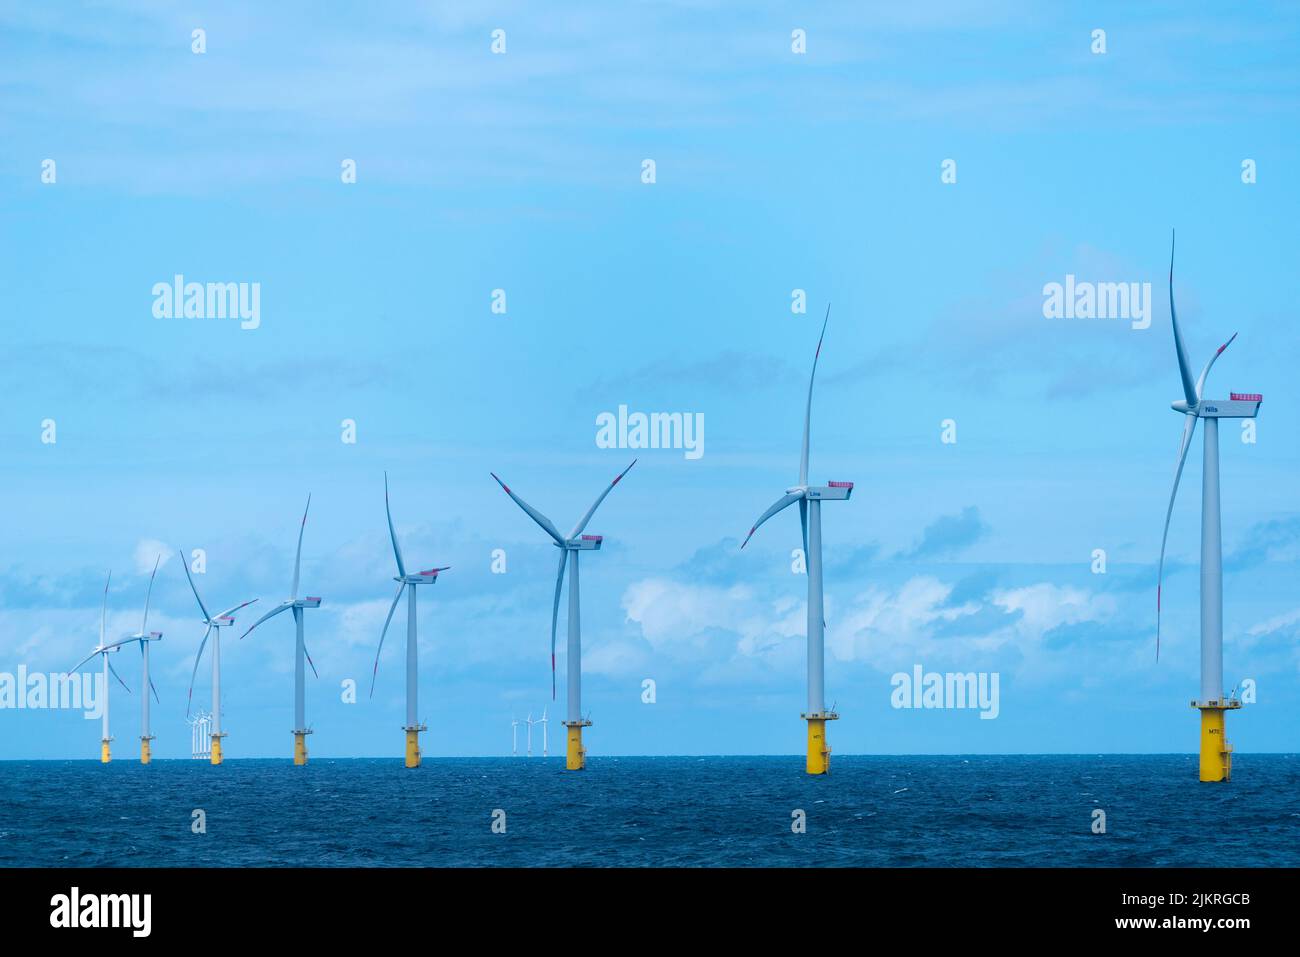 Offshore-Windkraftanlagen in der Nähe der Hochseeinsel Helgoland, Nordsee, Norddeutschland, Europa Stockfoto